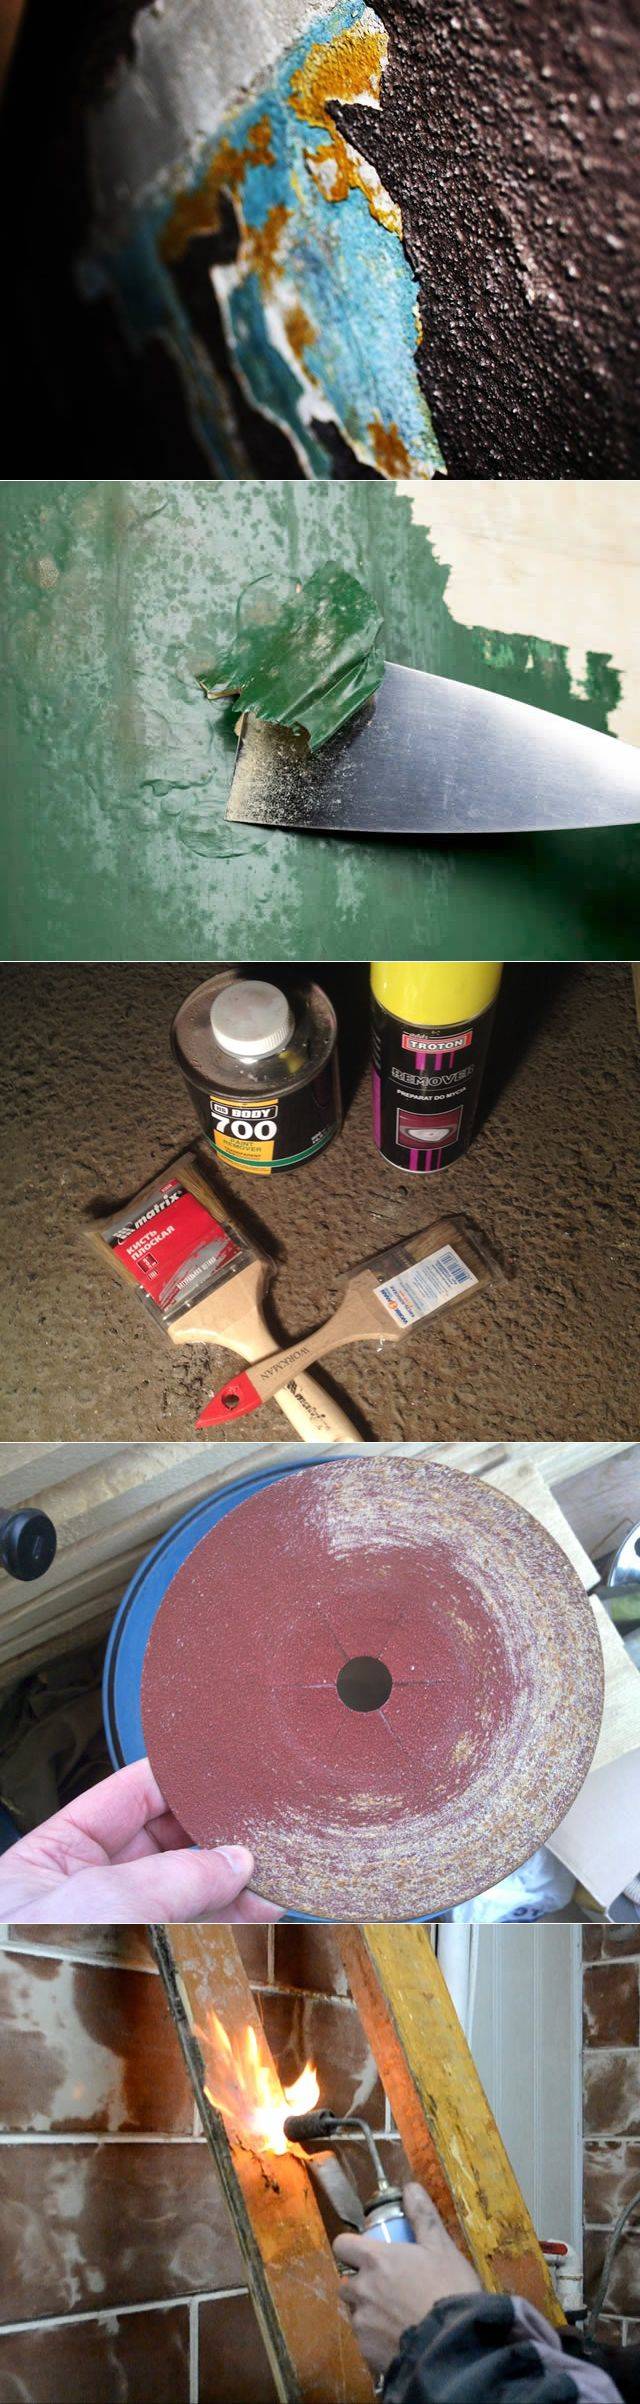 Как снять старую краску с деревянного пола несколькими действующими способами